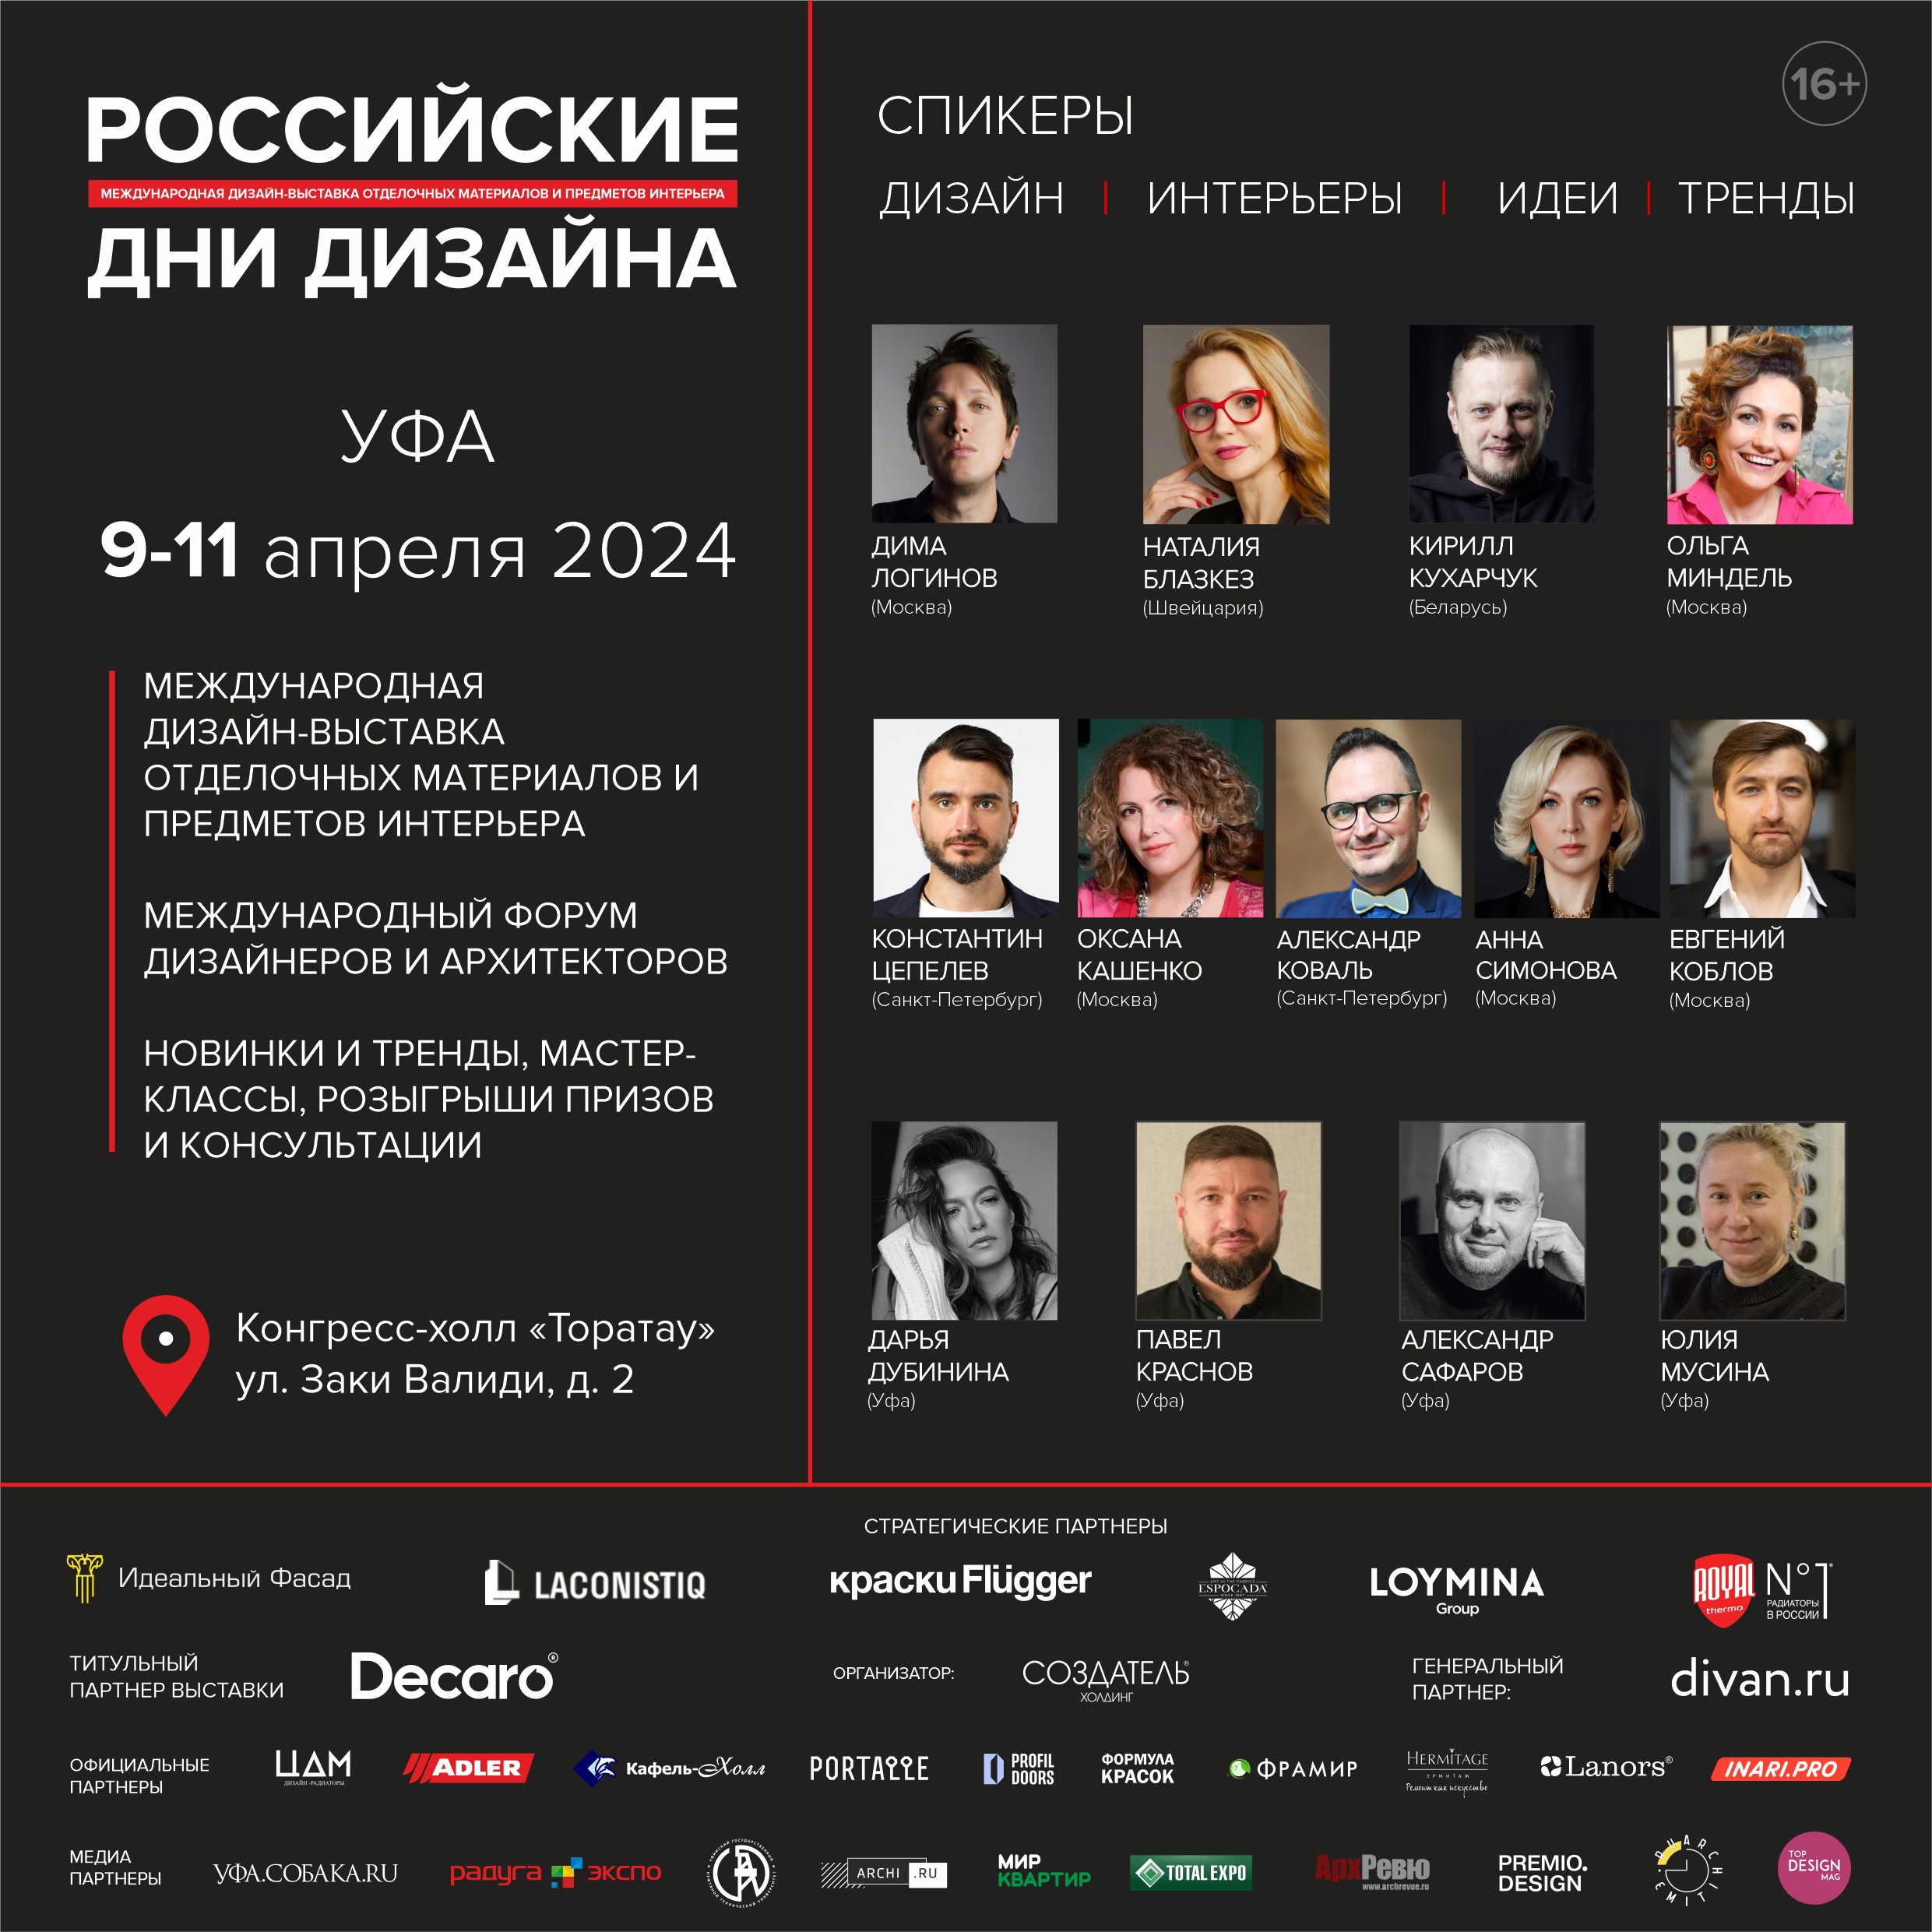 Международная дизайн-выставка РОССИЙСКИЕ ДНИ ДИЗАЙНА